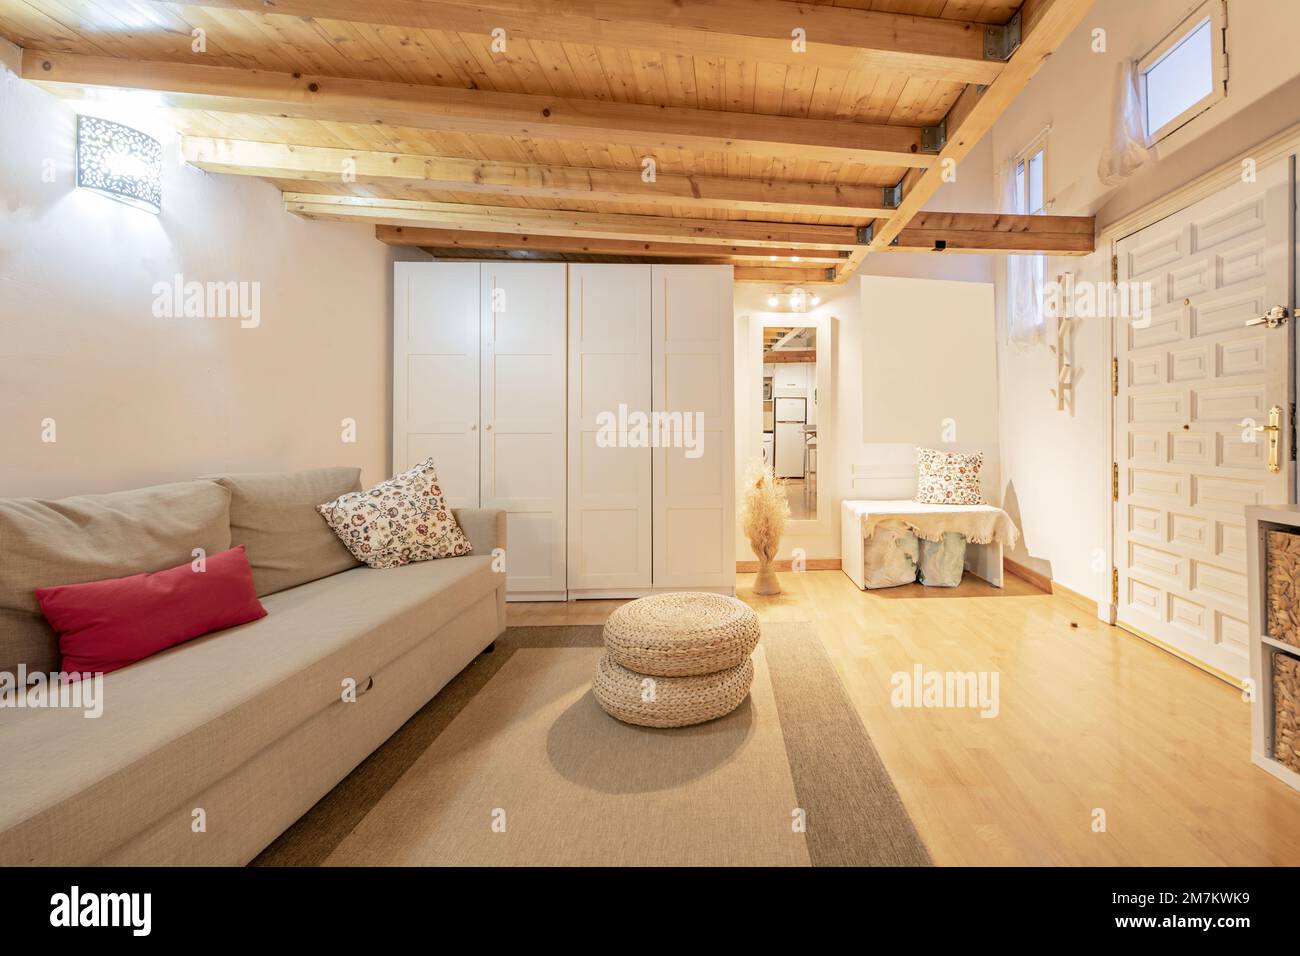 Appartamento mansardato in legno di pino con mobili bianchi al piano terra, con porta d'accesso rivestita in pannelli e pavimenti in parquet con tappeto beige Foto Stock